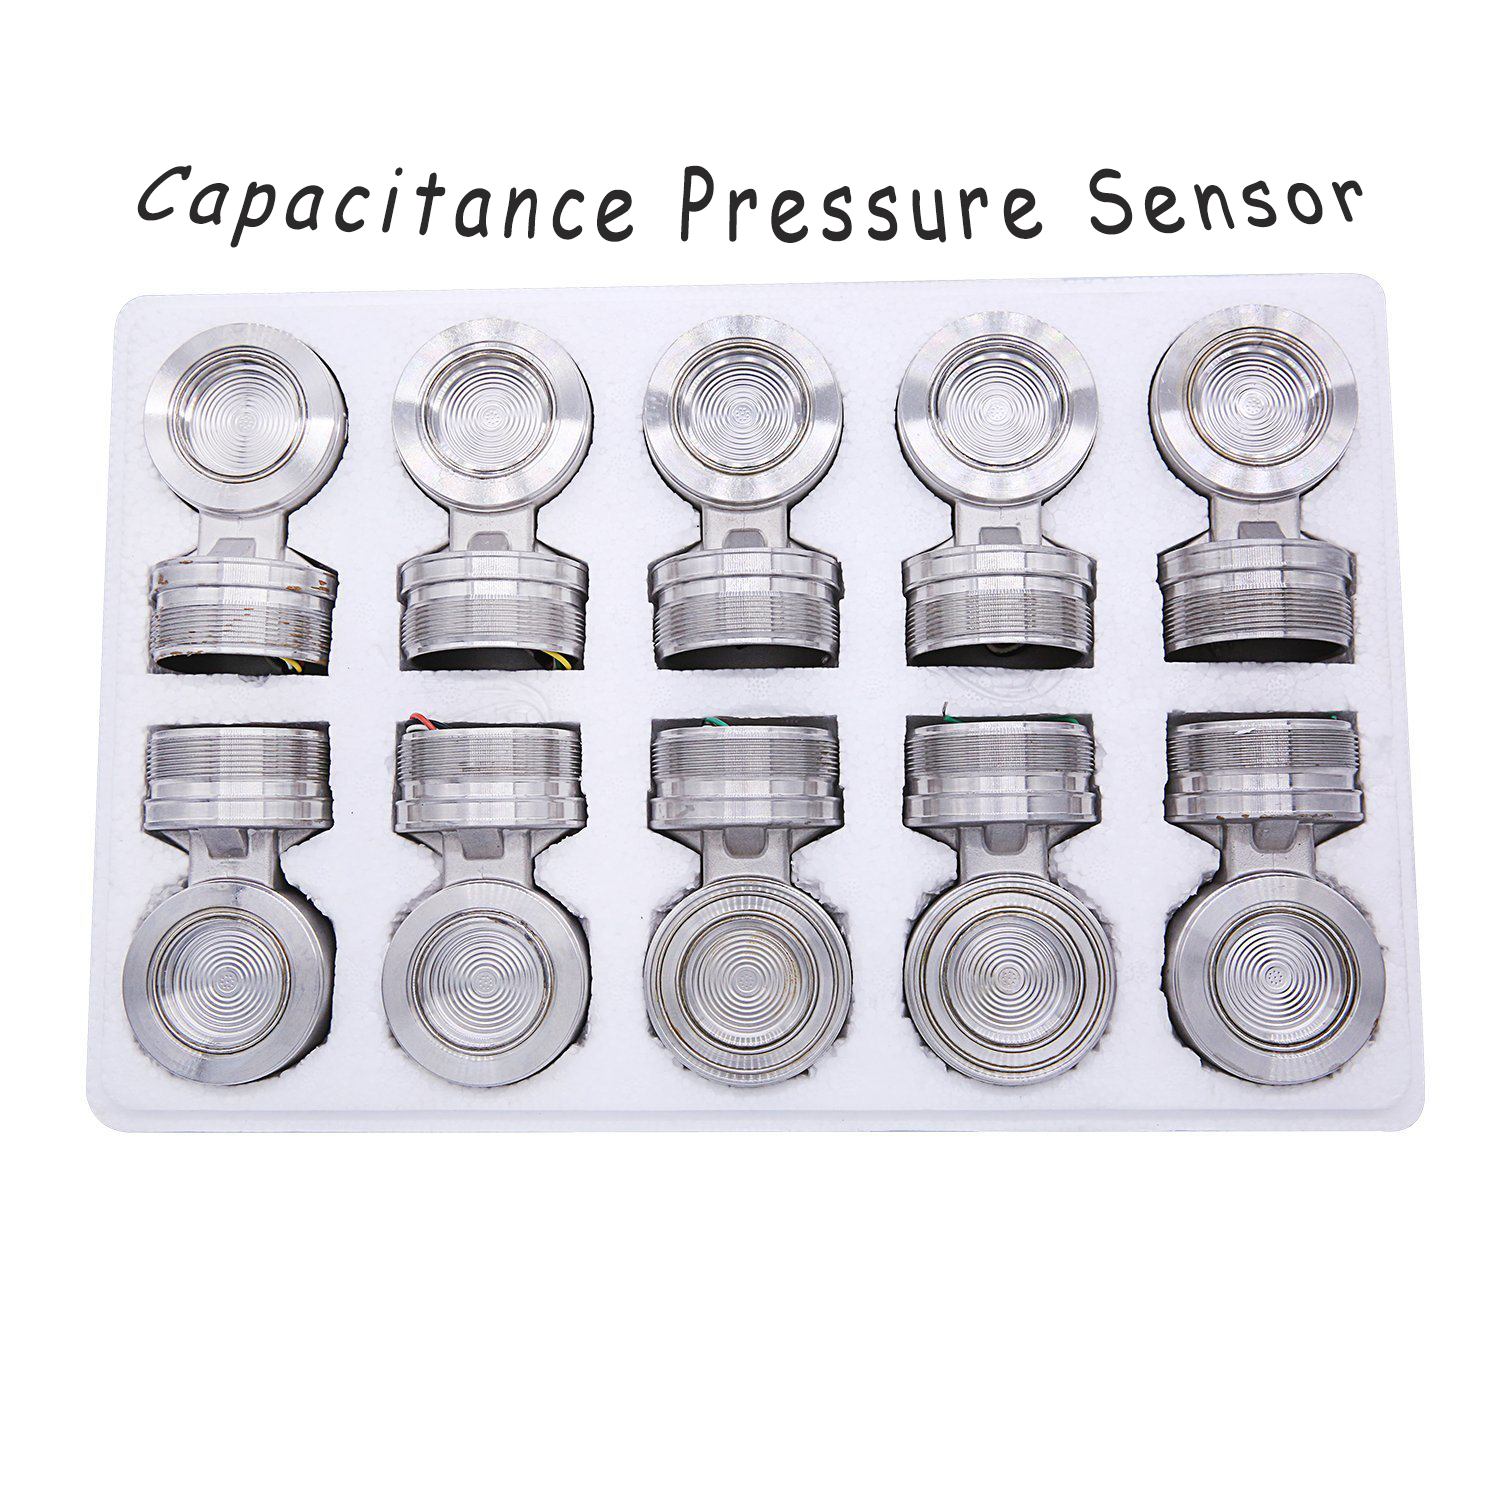 sensor differential pressure